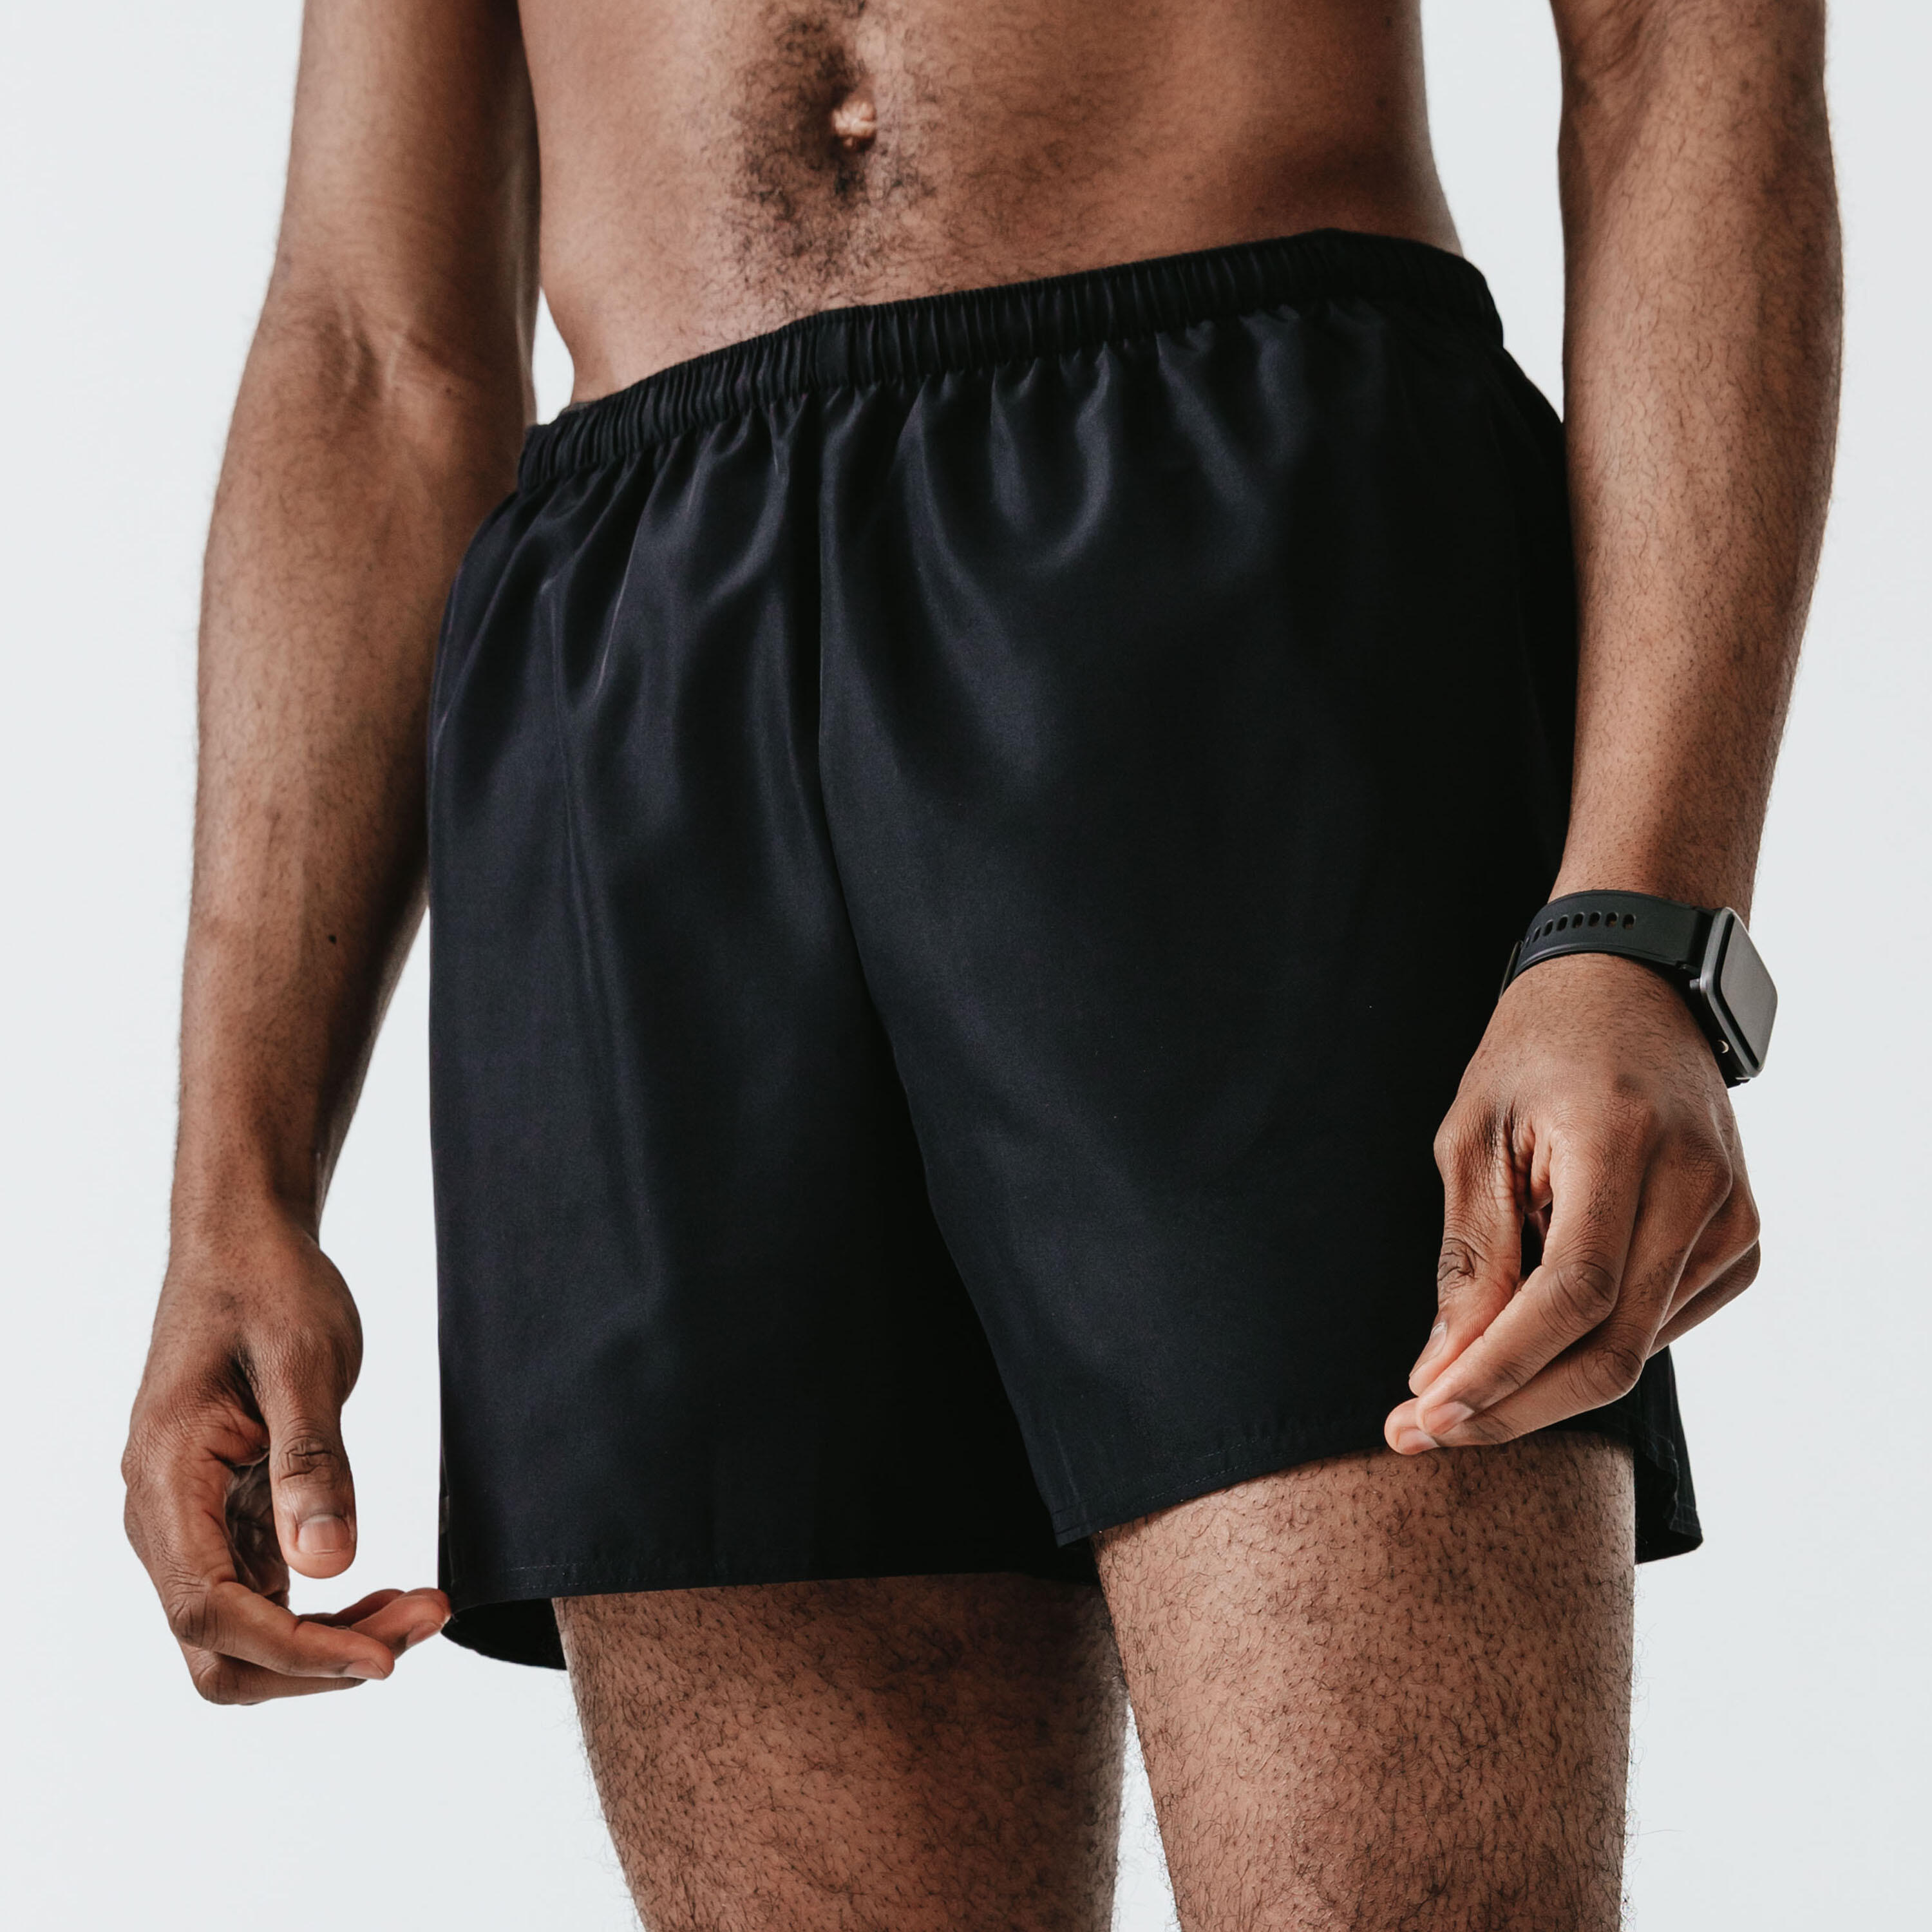 Men Shorts Half Pants for Cycling Basketball Gym Swimming Shorts Running  Shorts for Men  Boys